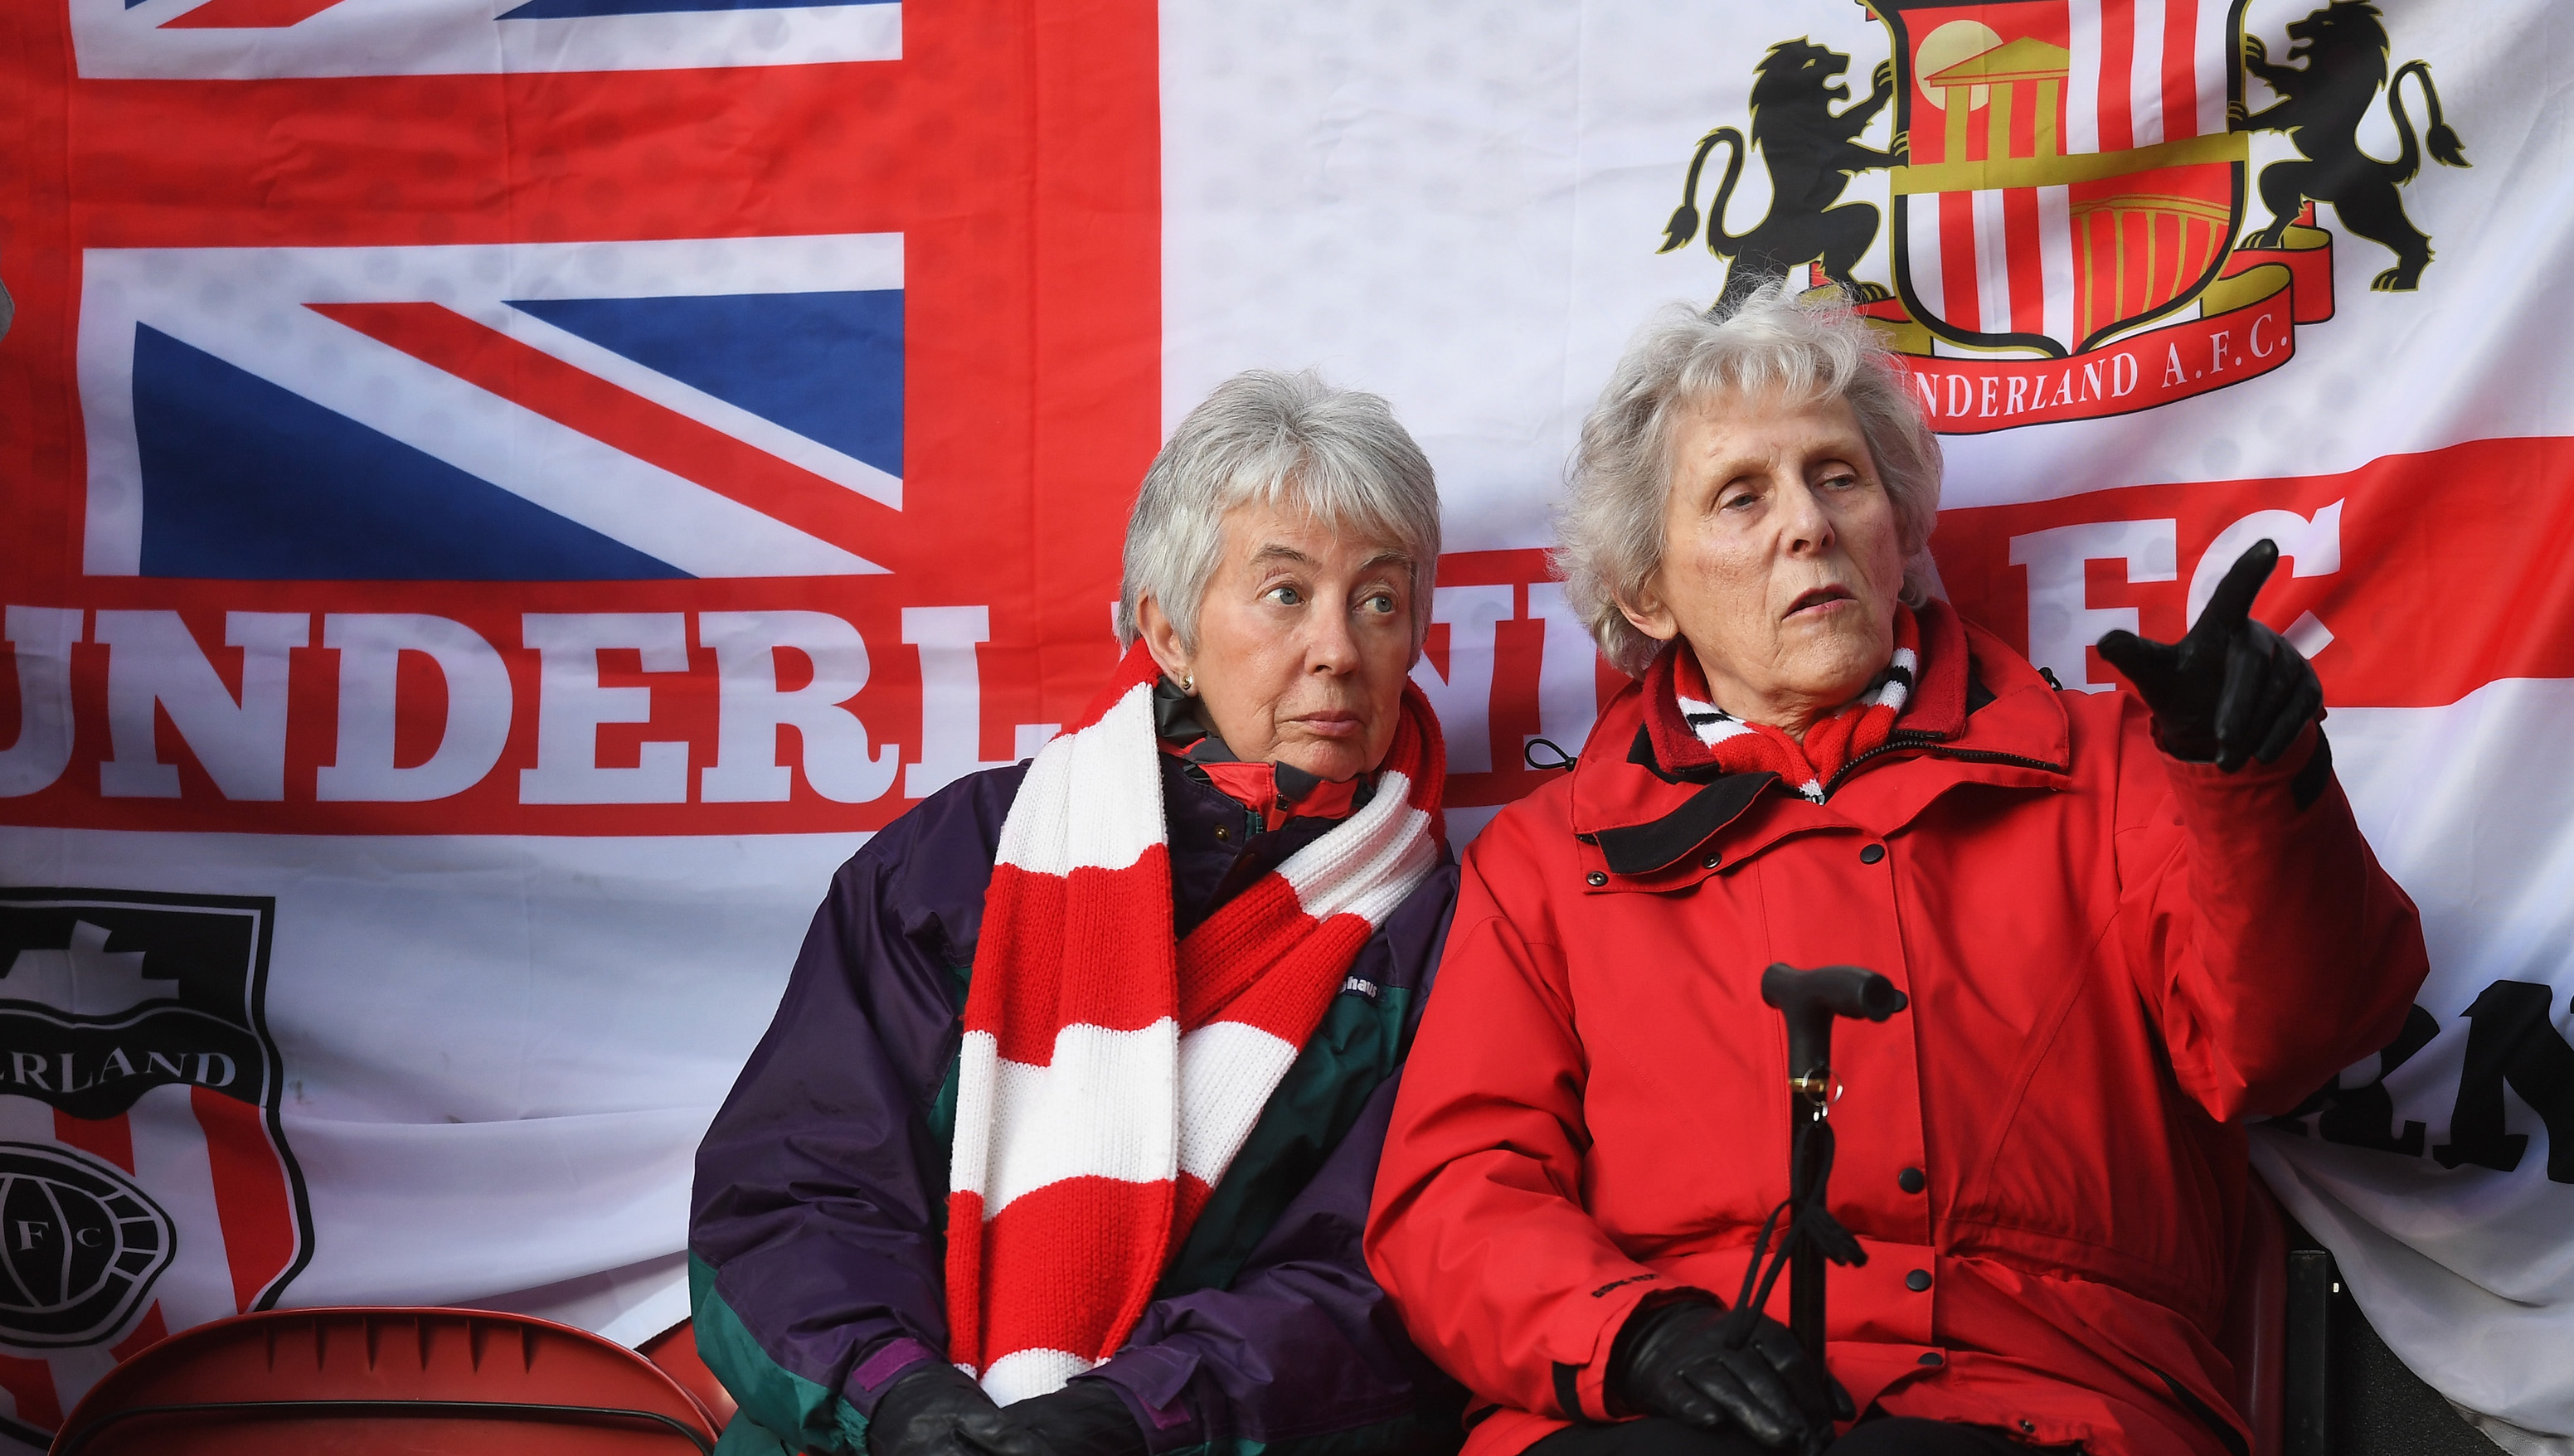 Sunderland fans at the Riverside